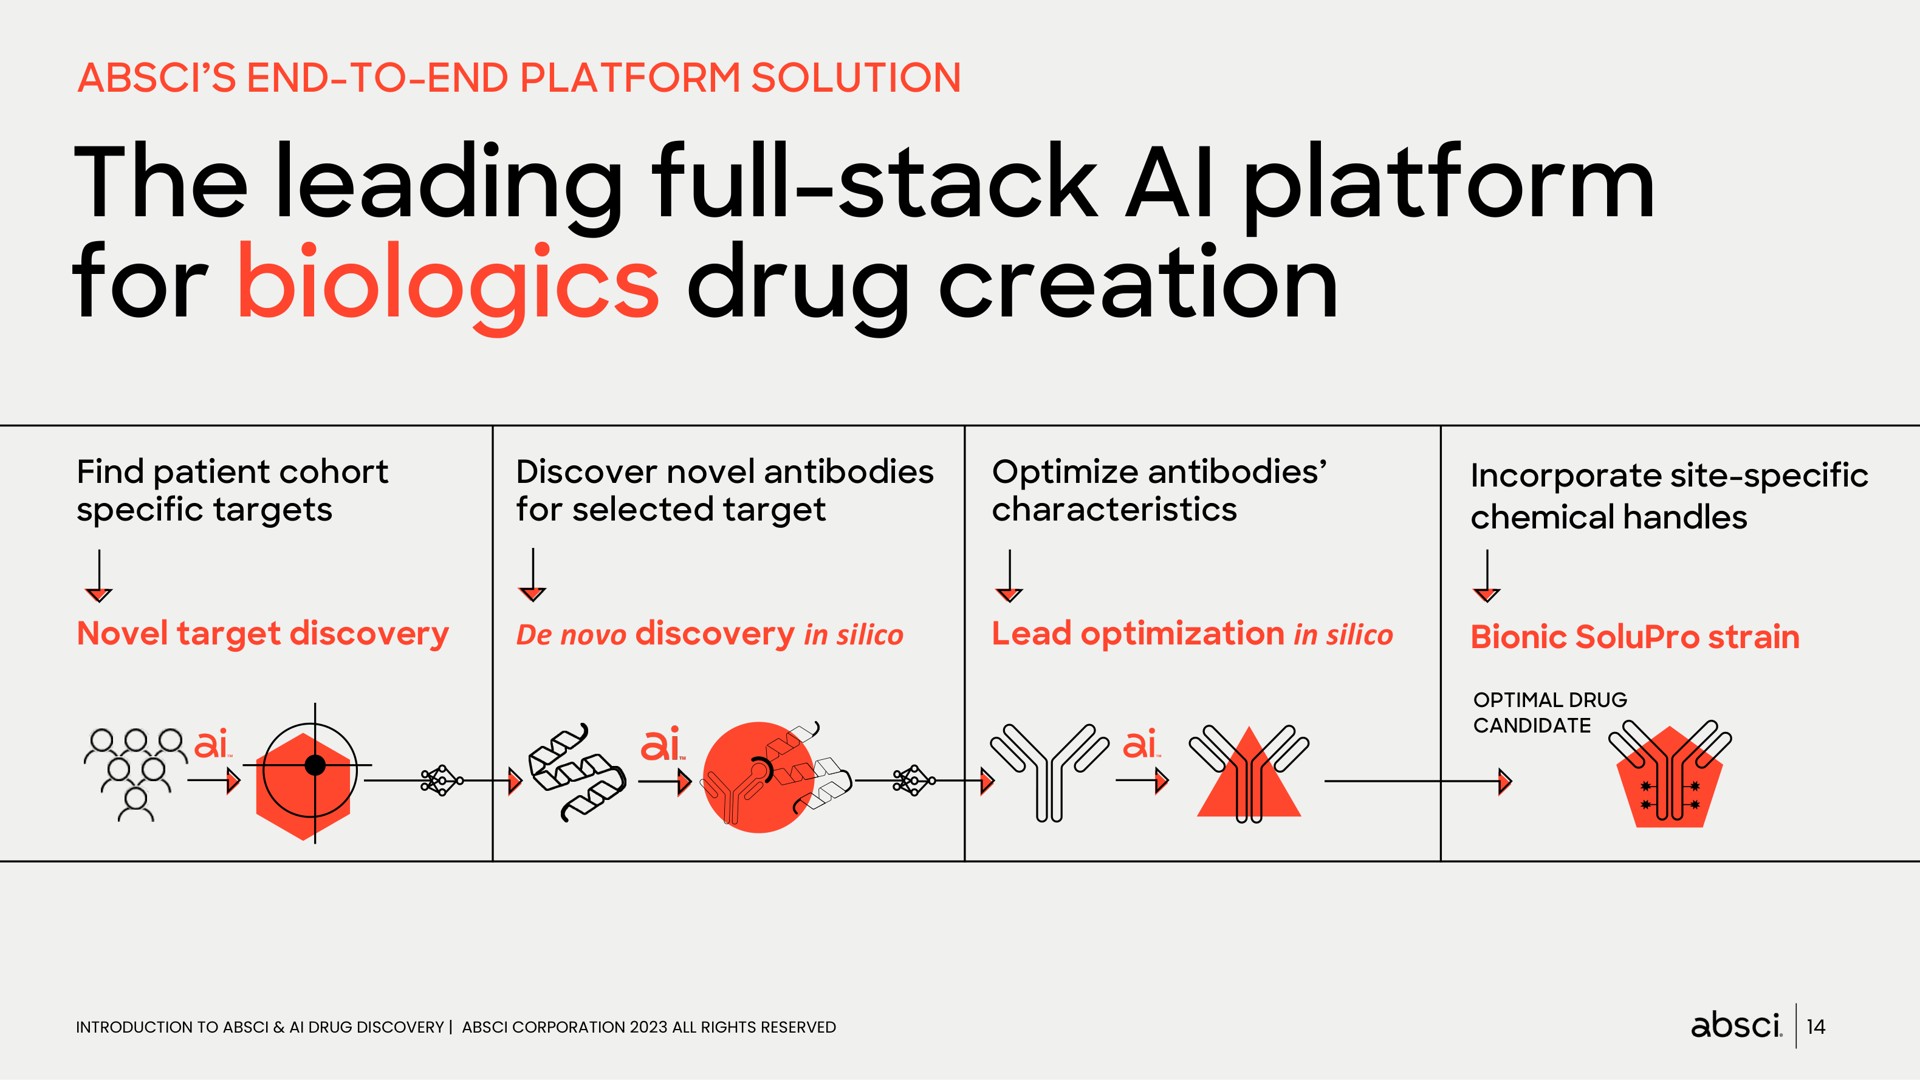 end to end platform solution the leading full stack platform for drug creation | Absci